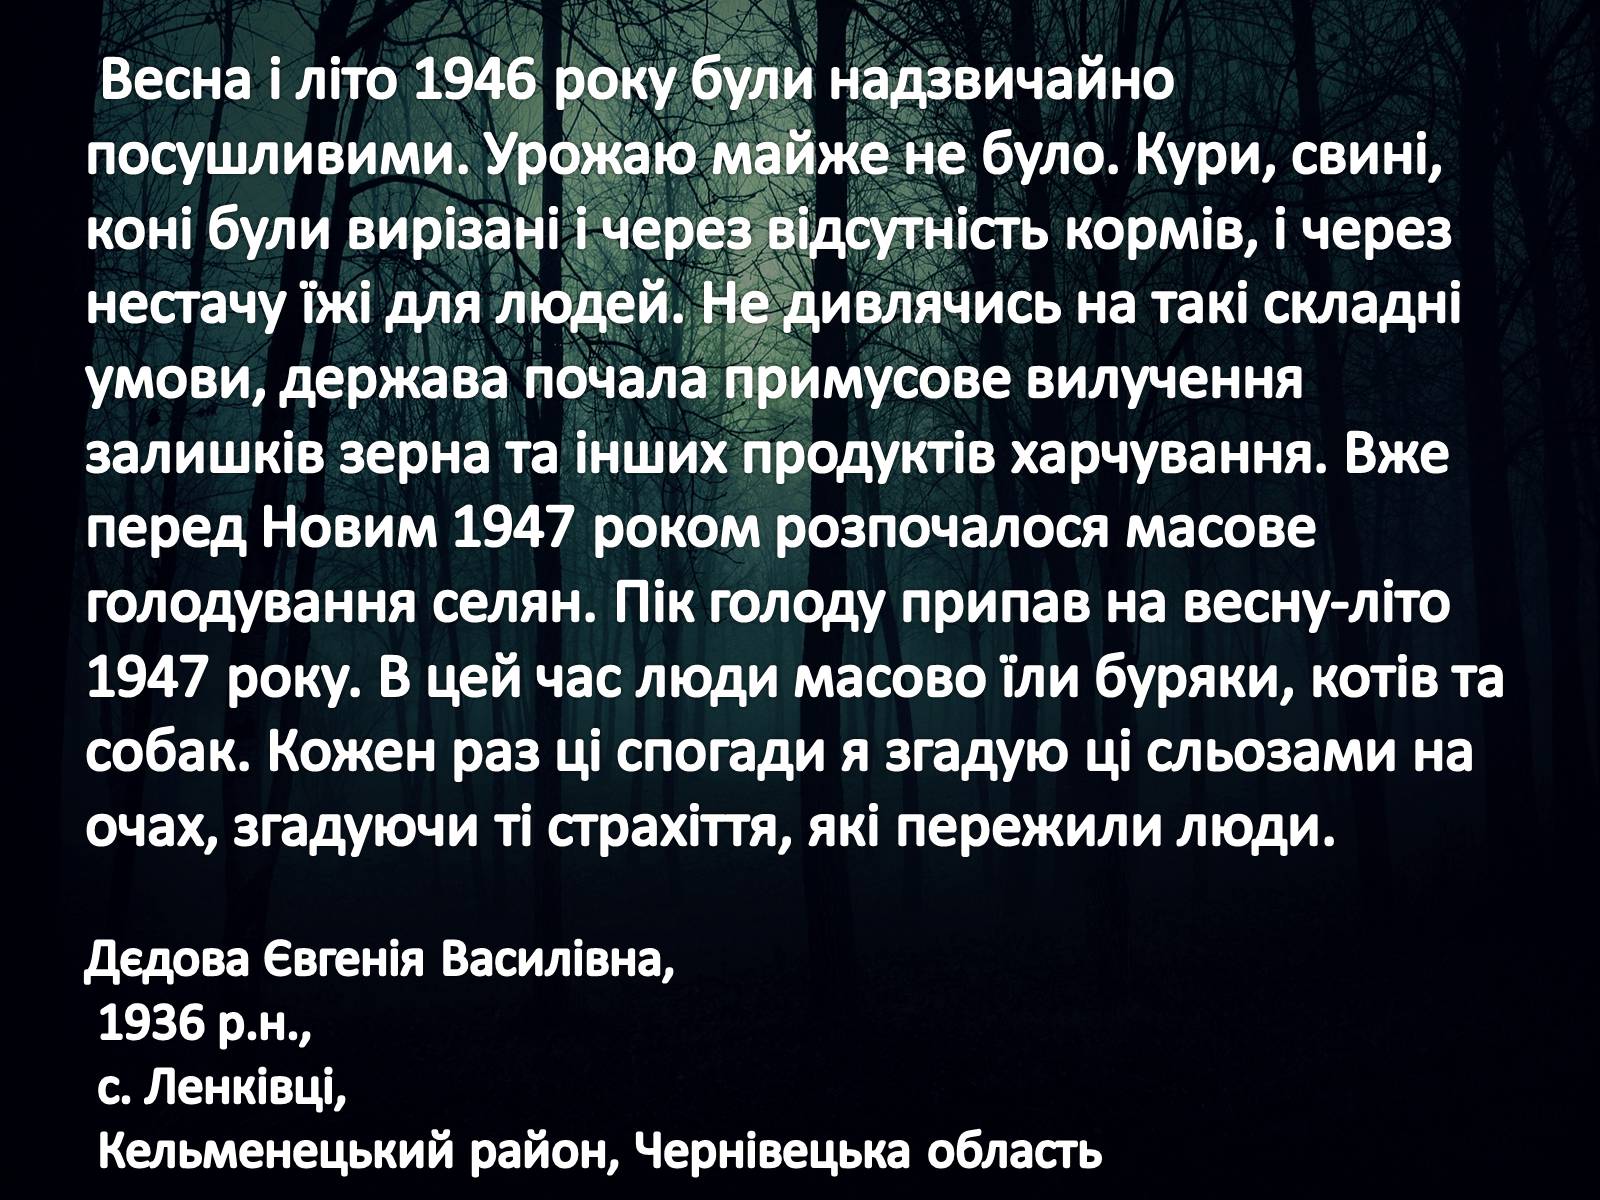 Реферат: Голод 1946-1947 років в Україні